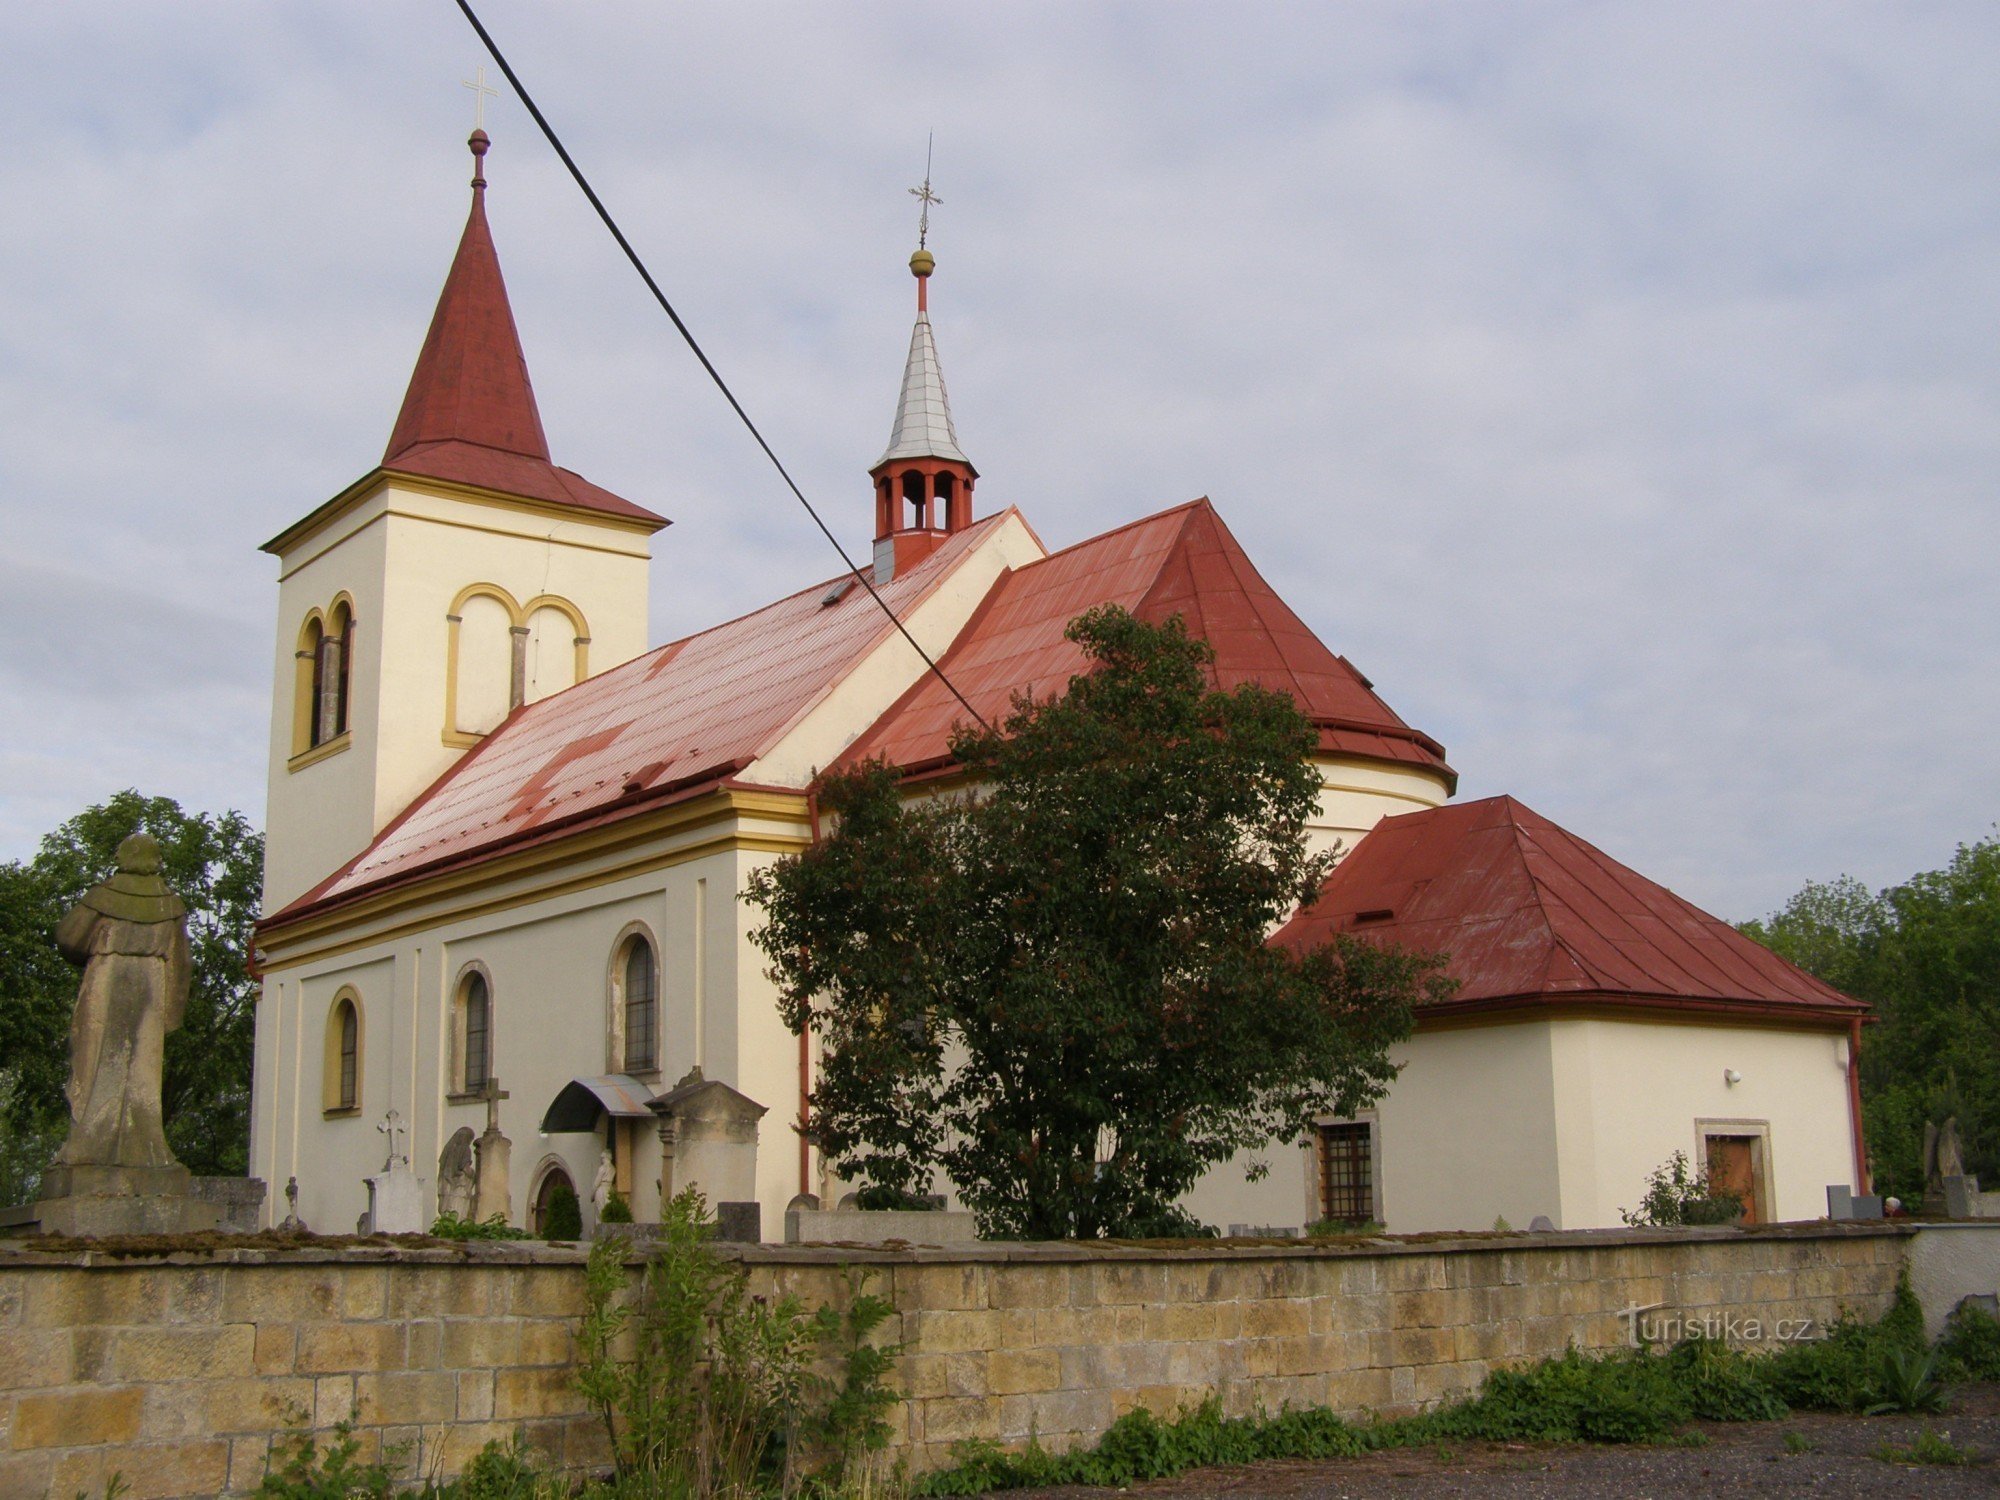 Robousy - cerkev Najdba sv. Kriza